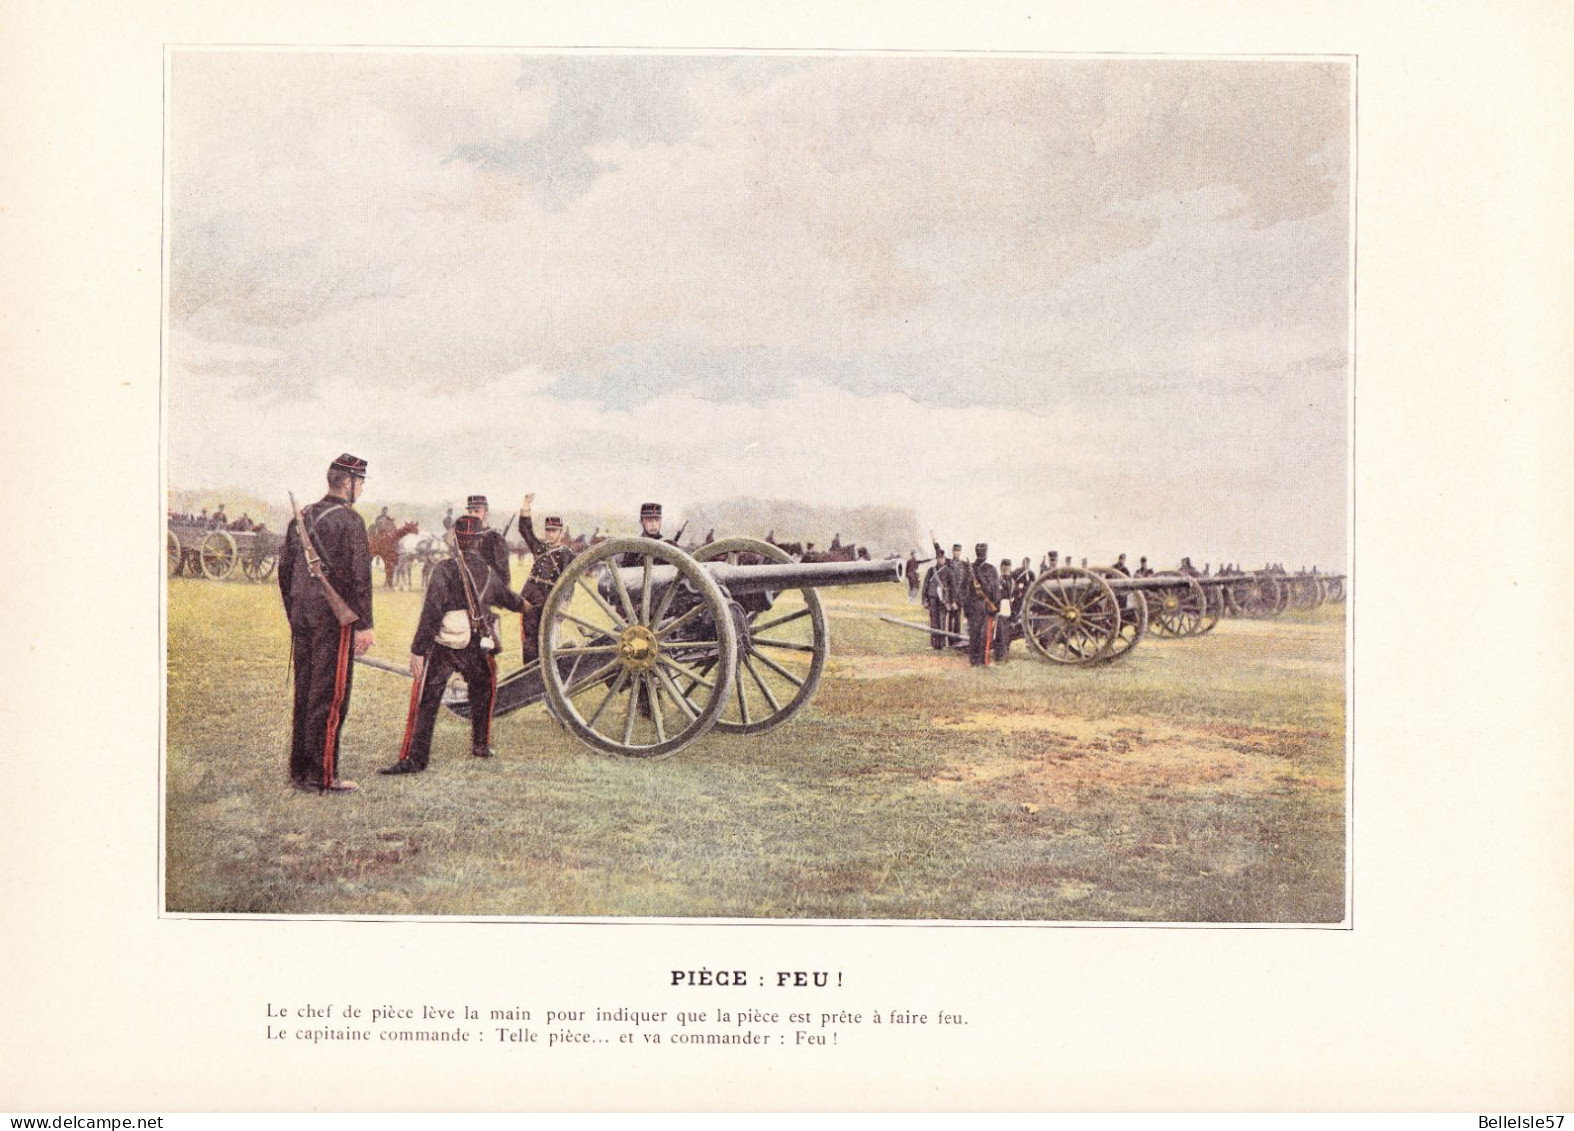 Anniversaire de la Grande Guerre - ALBUM Militaire - années1890